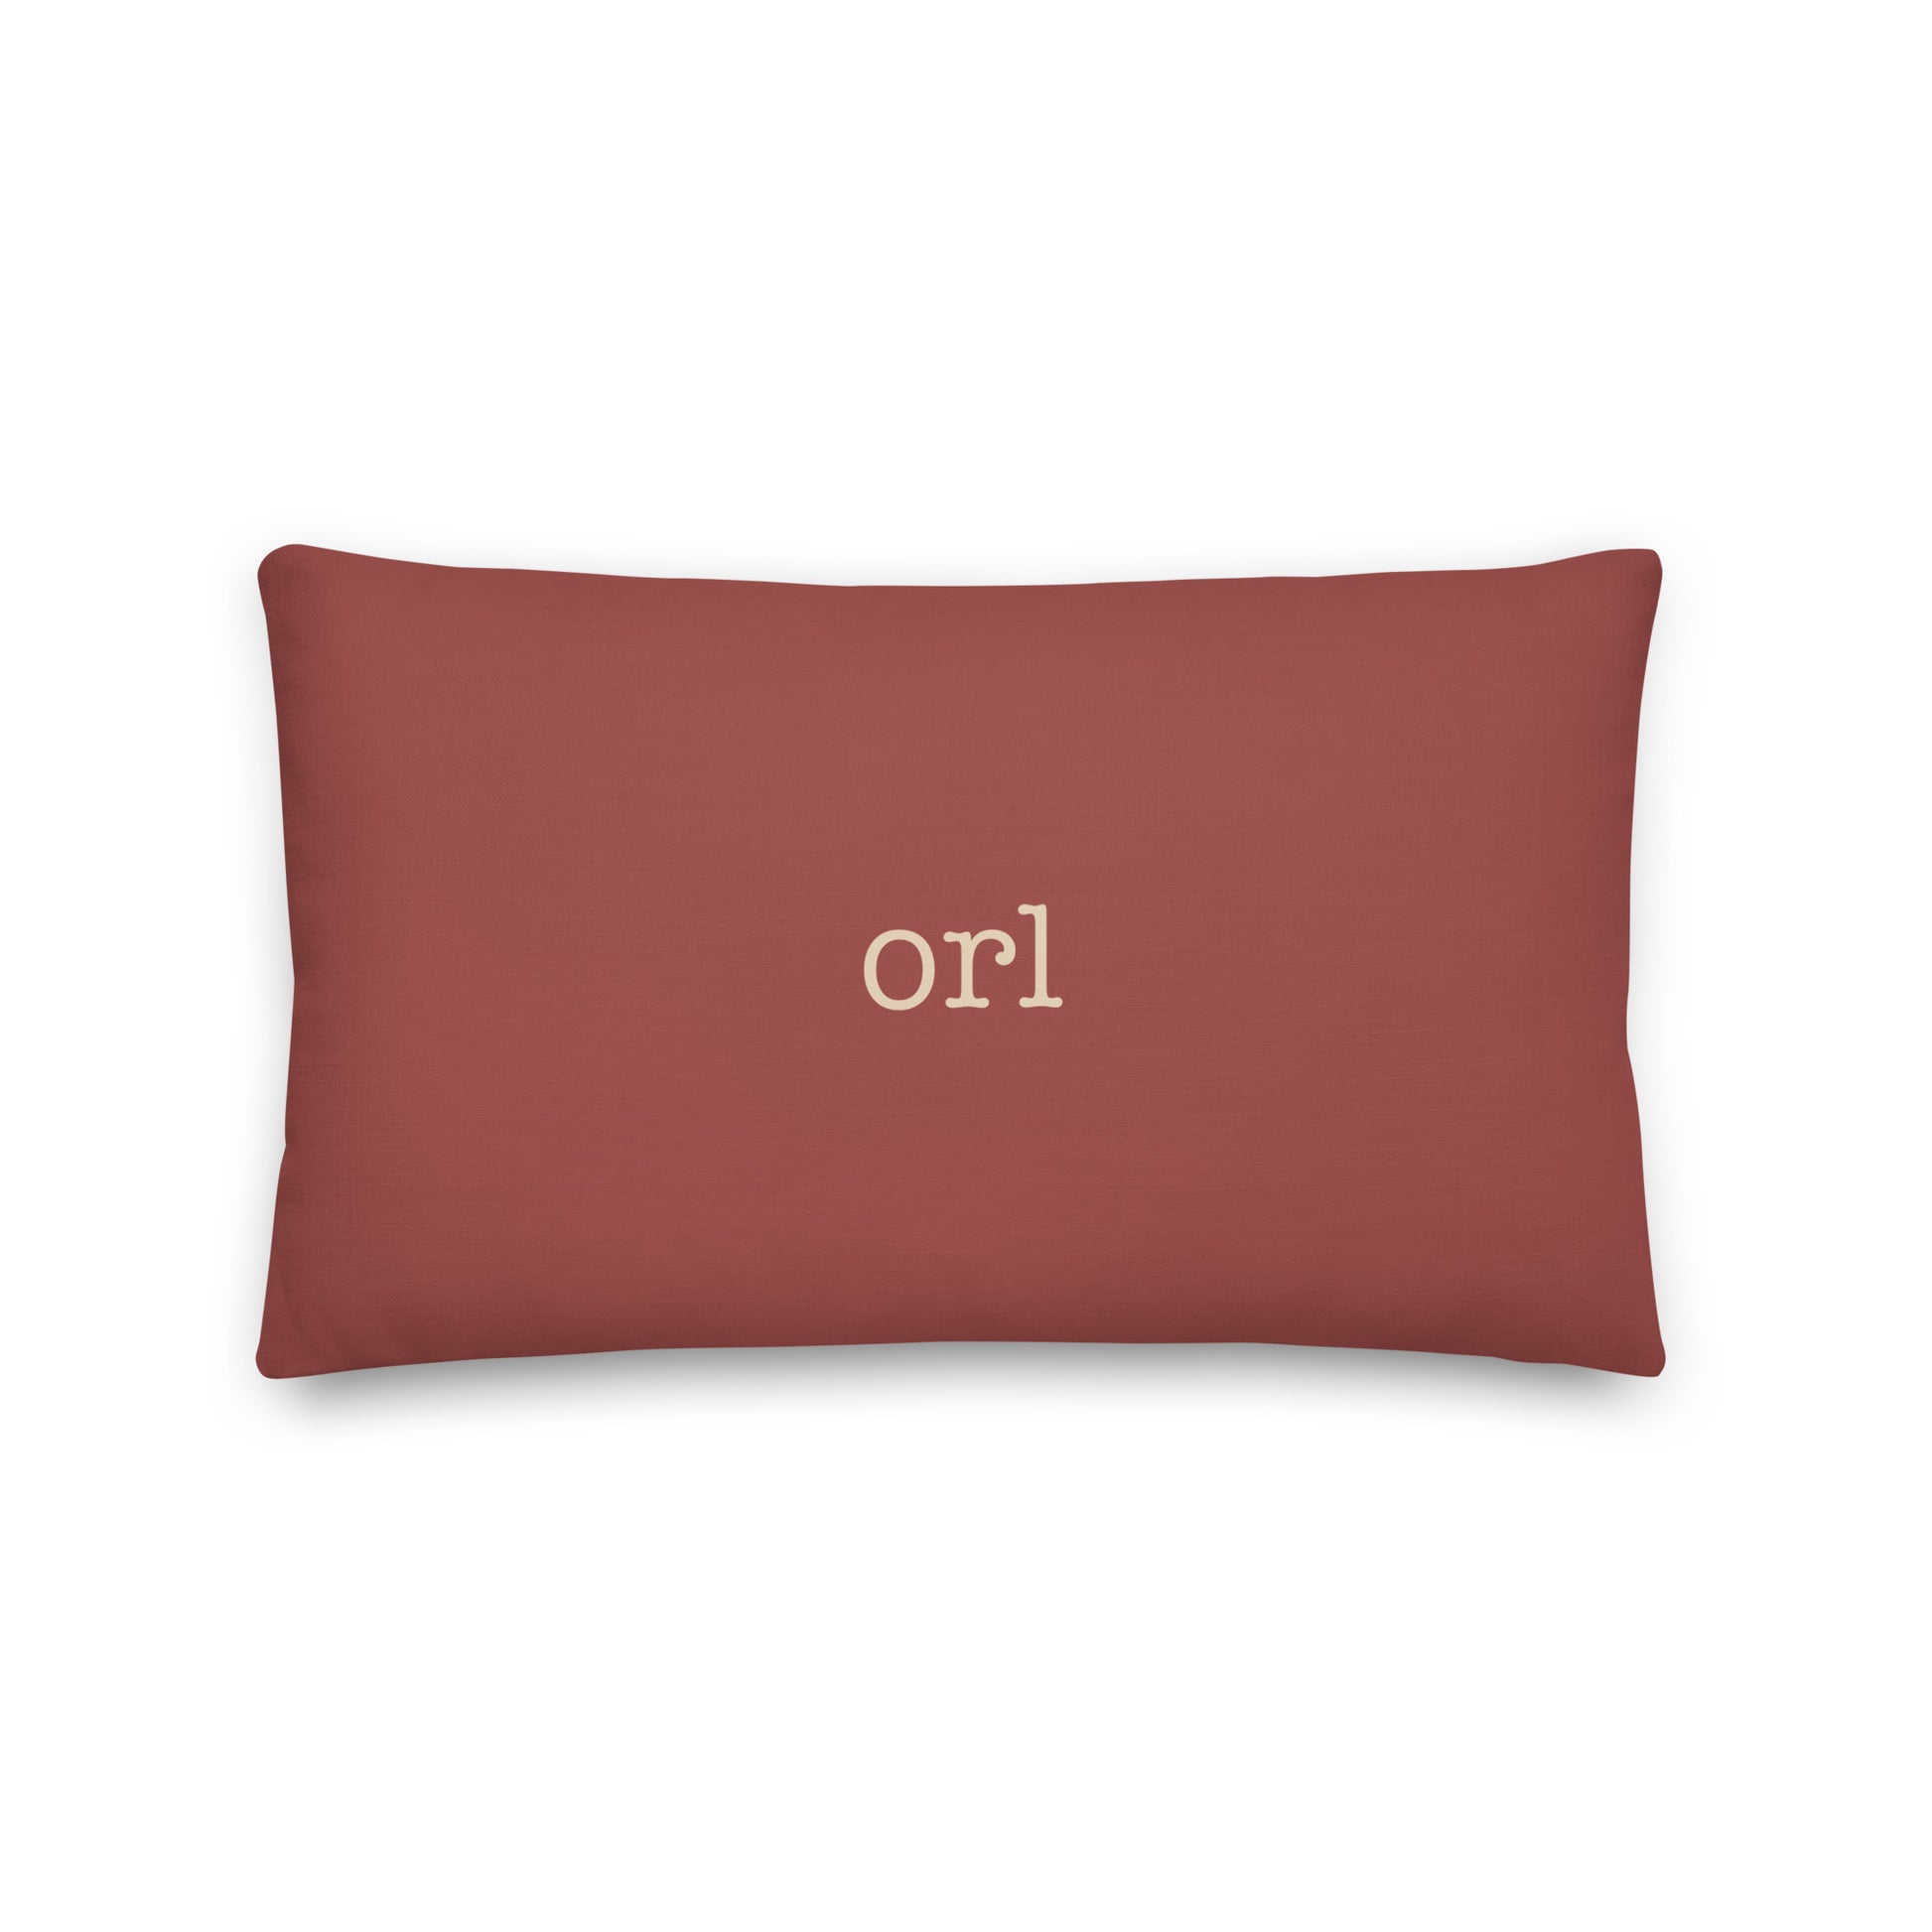 Typewriter Pillow - Terra Cotta • ORL Orlando • YHM Designs - Image 02